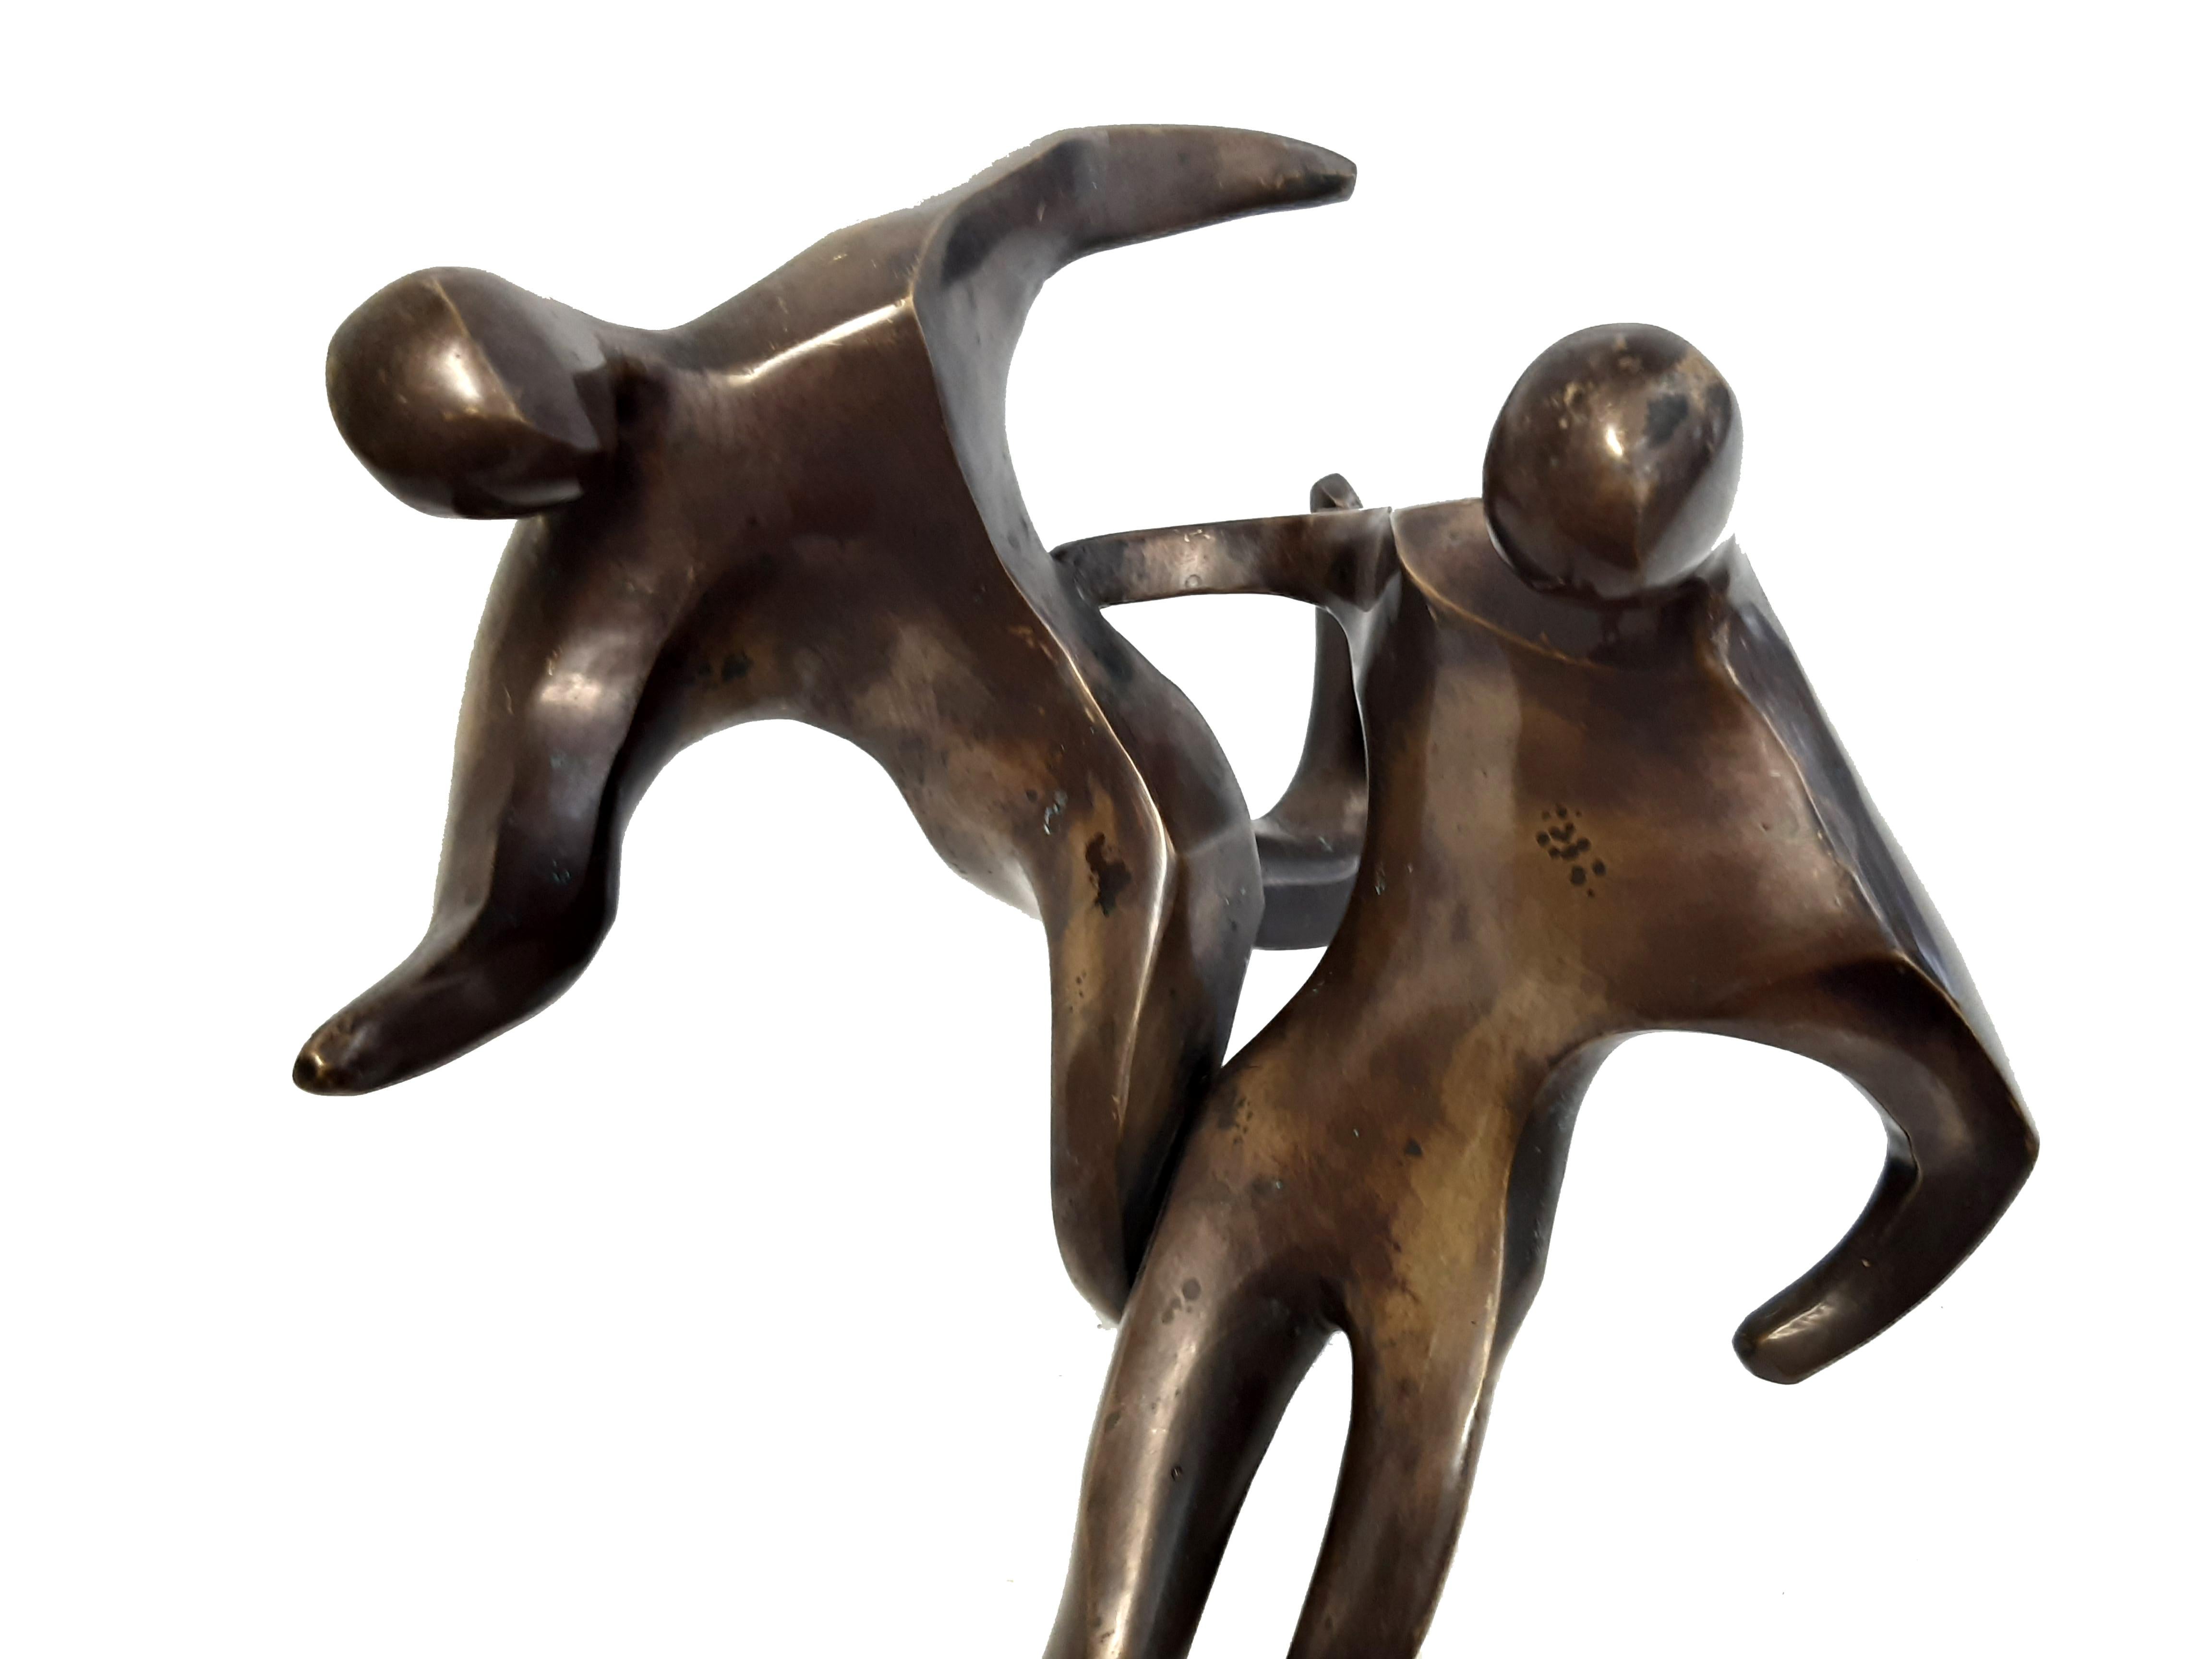 Zeittypische Bronzeskulptur der 50er Jahre, 2 Fußballspieler, die um einen Ball kämpfen, darstellend. Starke dynamische Darstellung in der zeittypischen Formensprache der Mid-Centurys.

Die Figur war ursprünglich auf einer Fußplatte montiert, diese